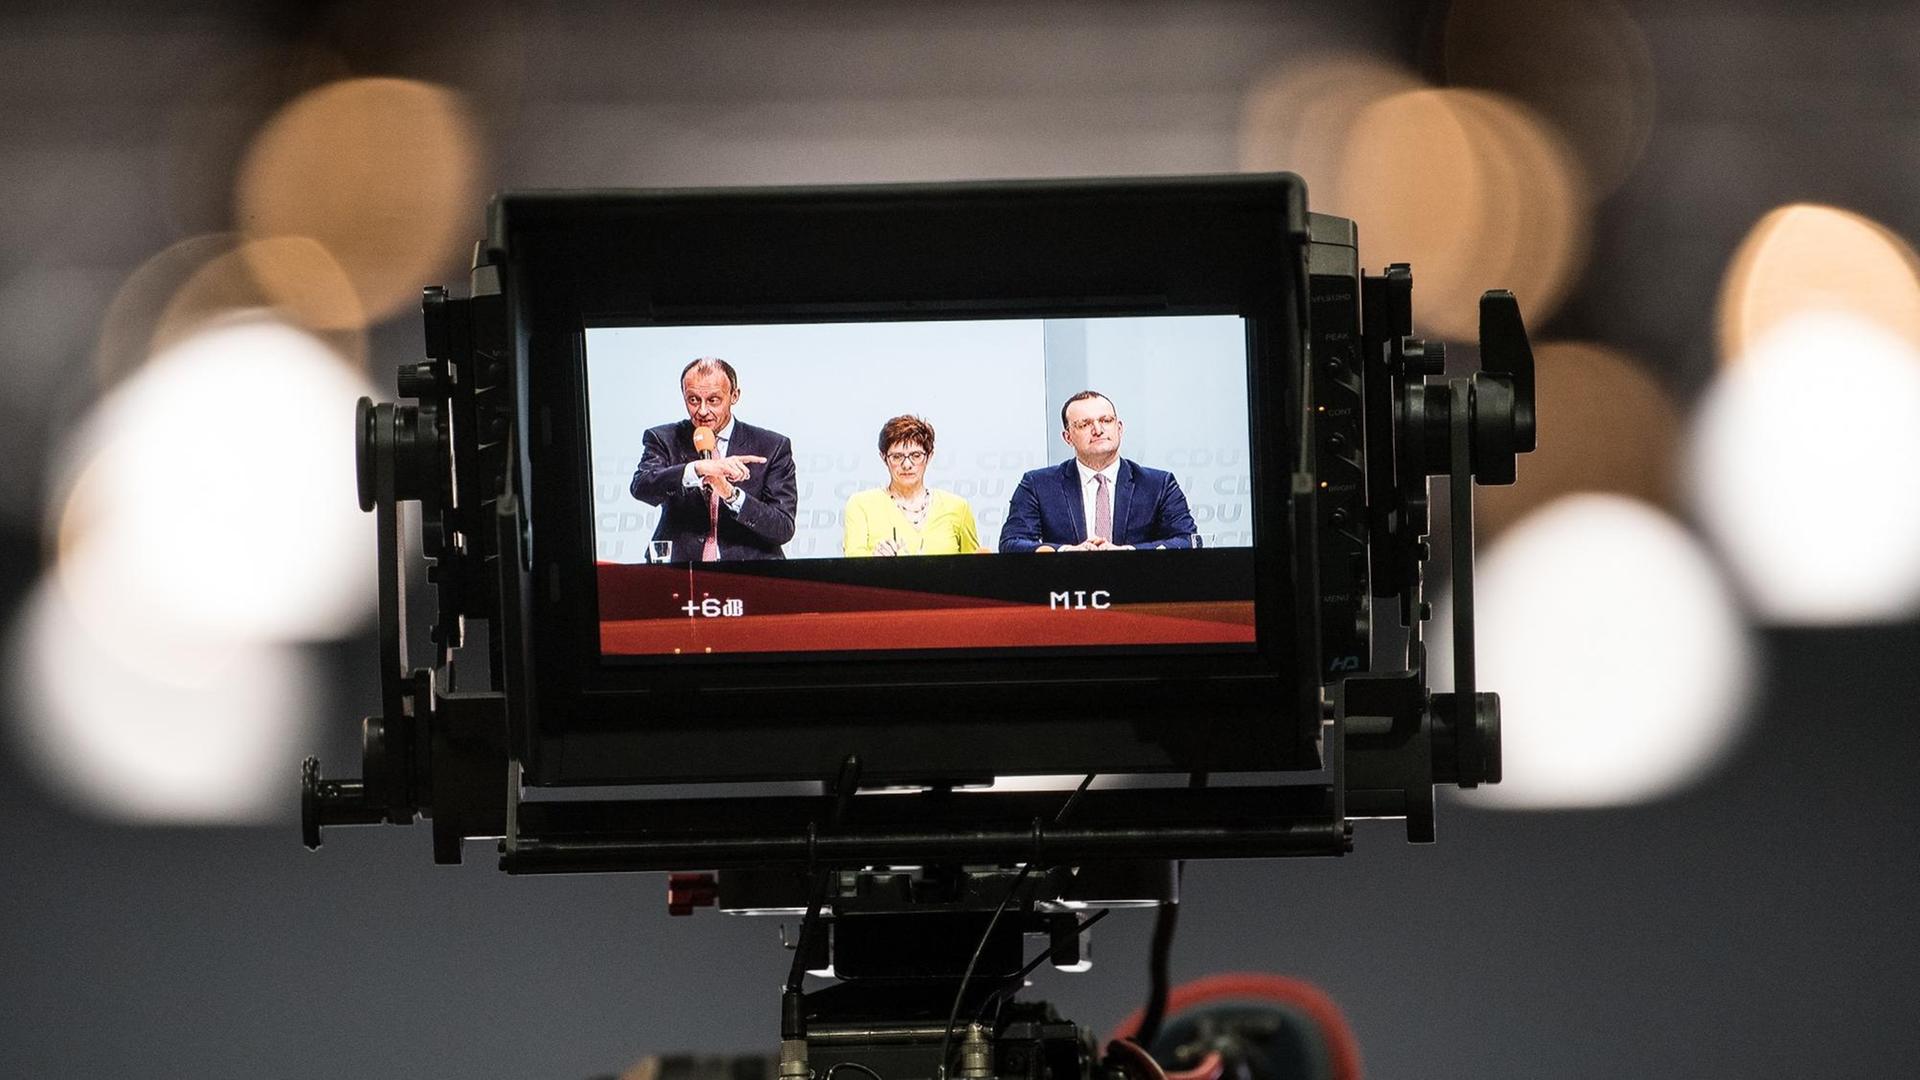 Der ehemalige Unionsfraktionschef Friedrich Merz, Generalsekretärin Annegret Kramp-Karrenbauer und Gesundheitsminister Jens Spahn sind während einer Regionalkonferenz der CDU auf einem Monitor einer Fernsehkamera zu sehen.